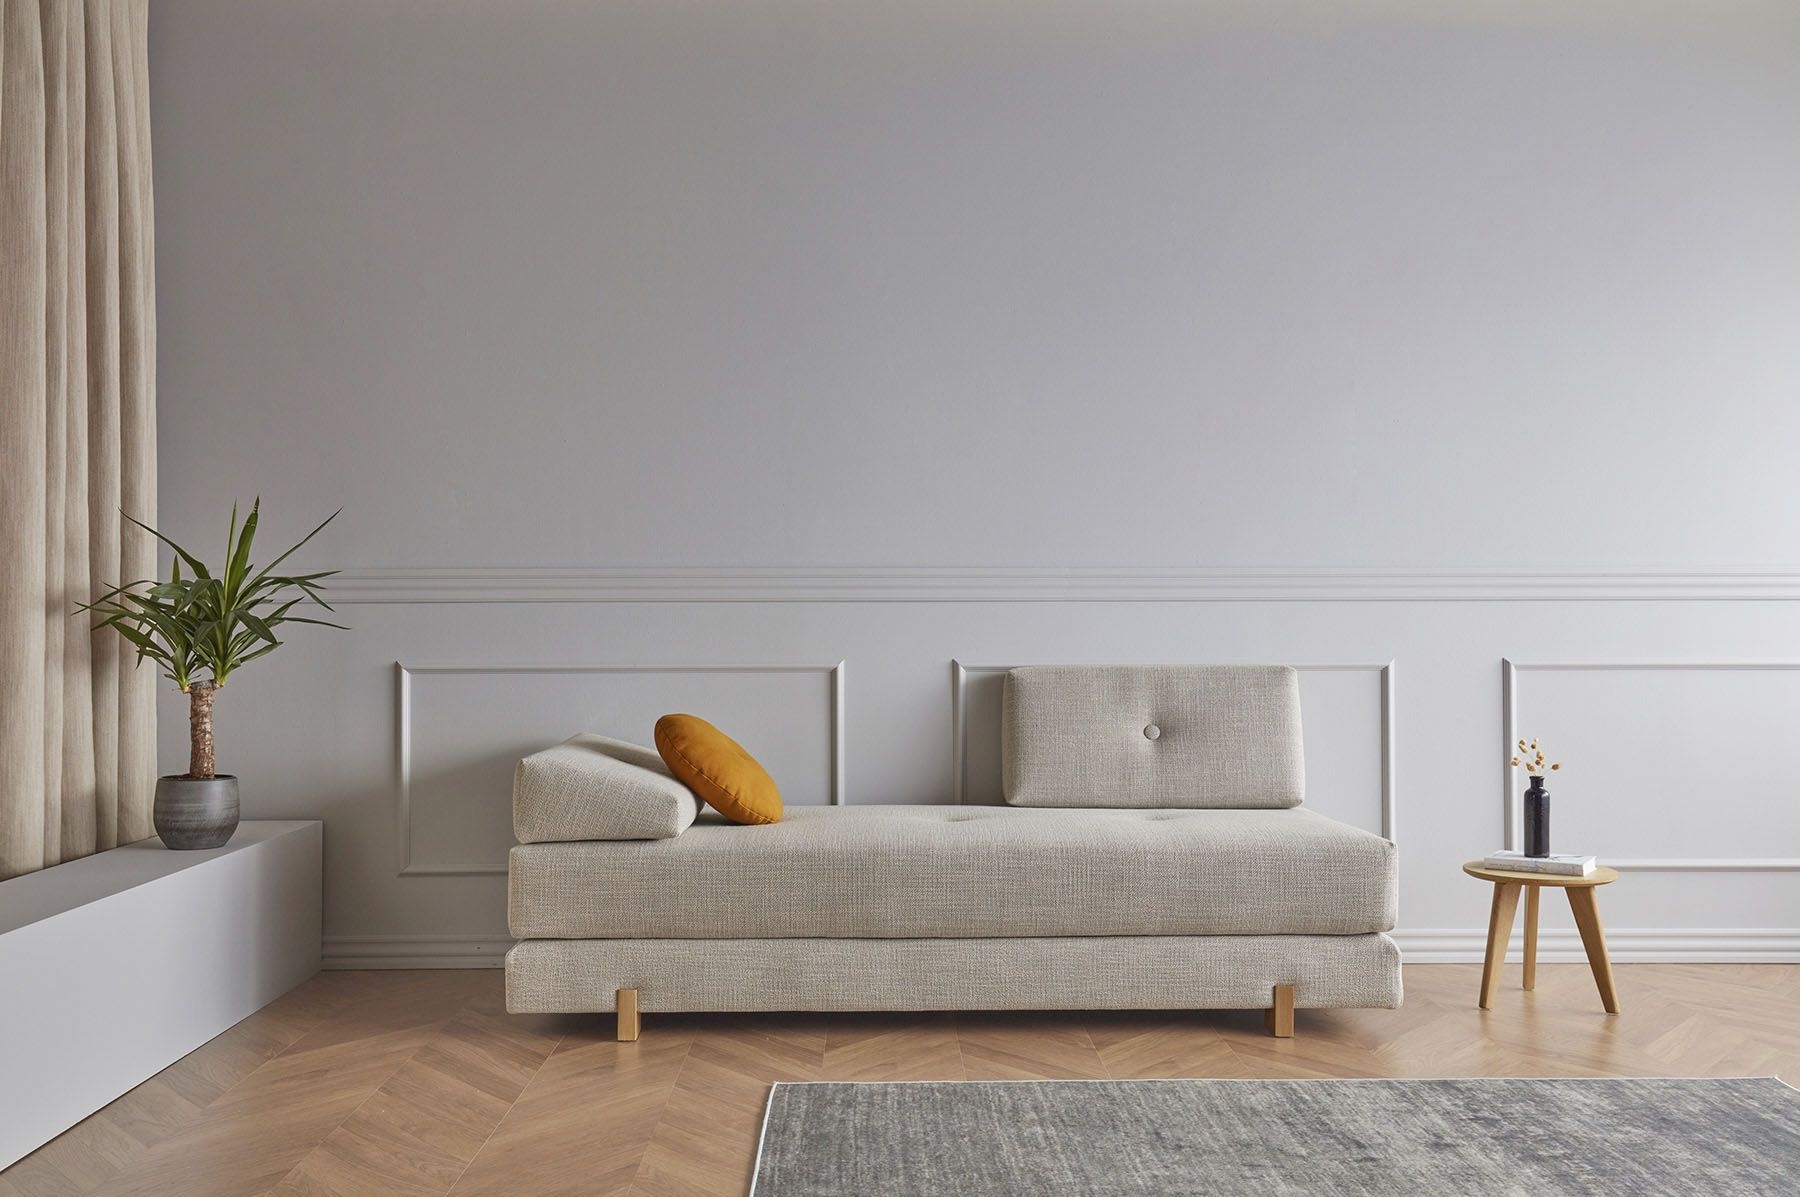 INNOVATION Living Möbel auf Raten kaufen | BAUR